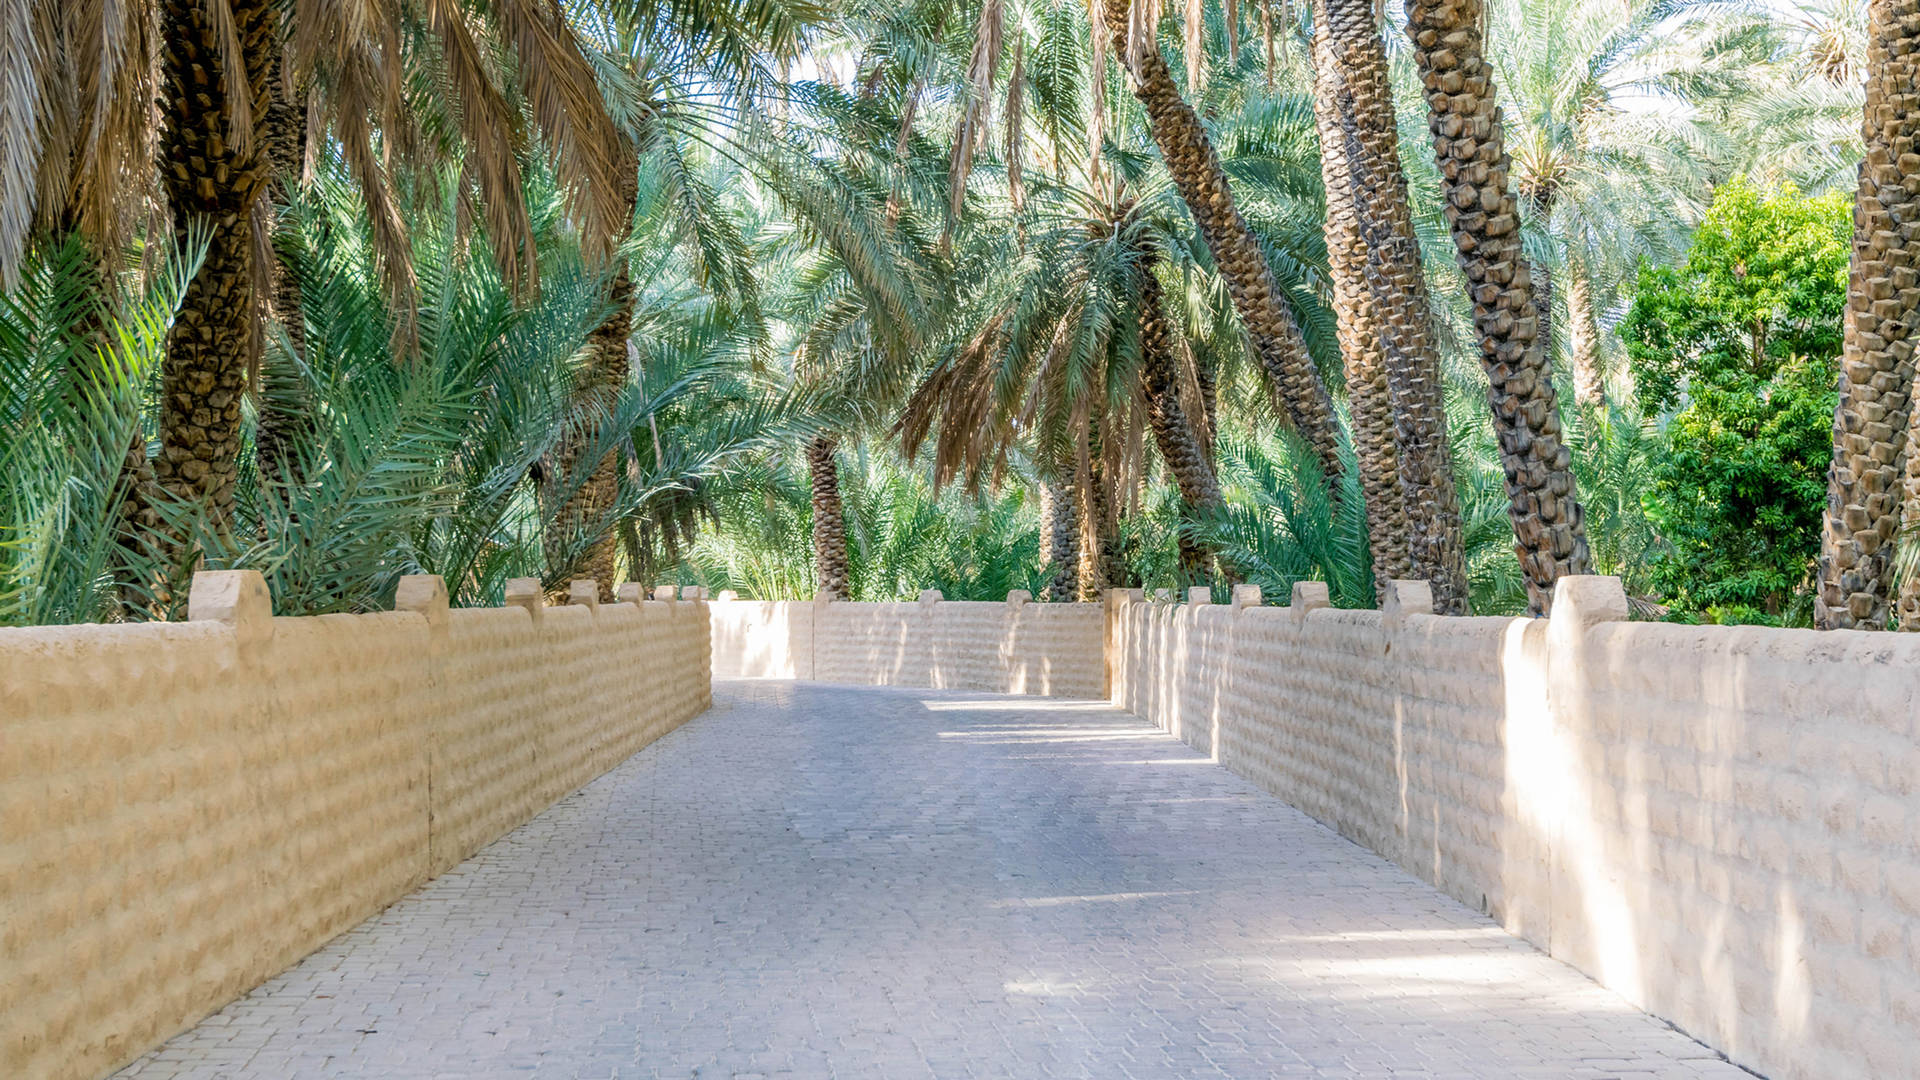 Al Ain oasis Abu Dhabi day trip